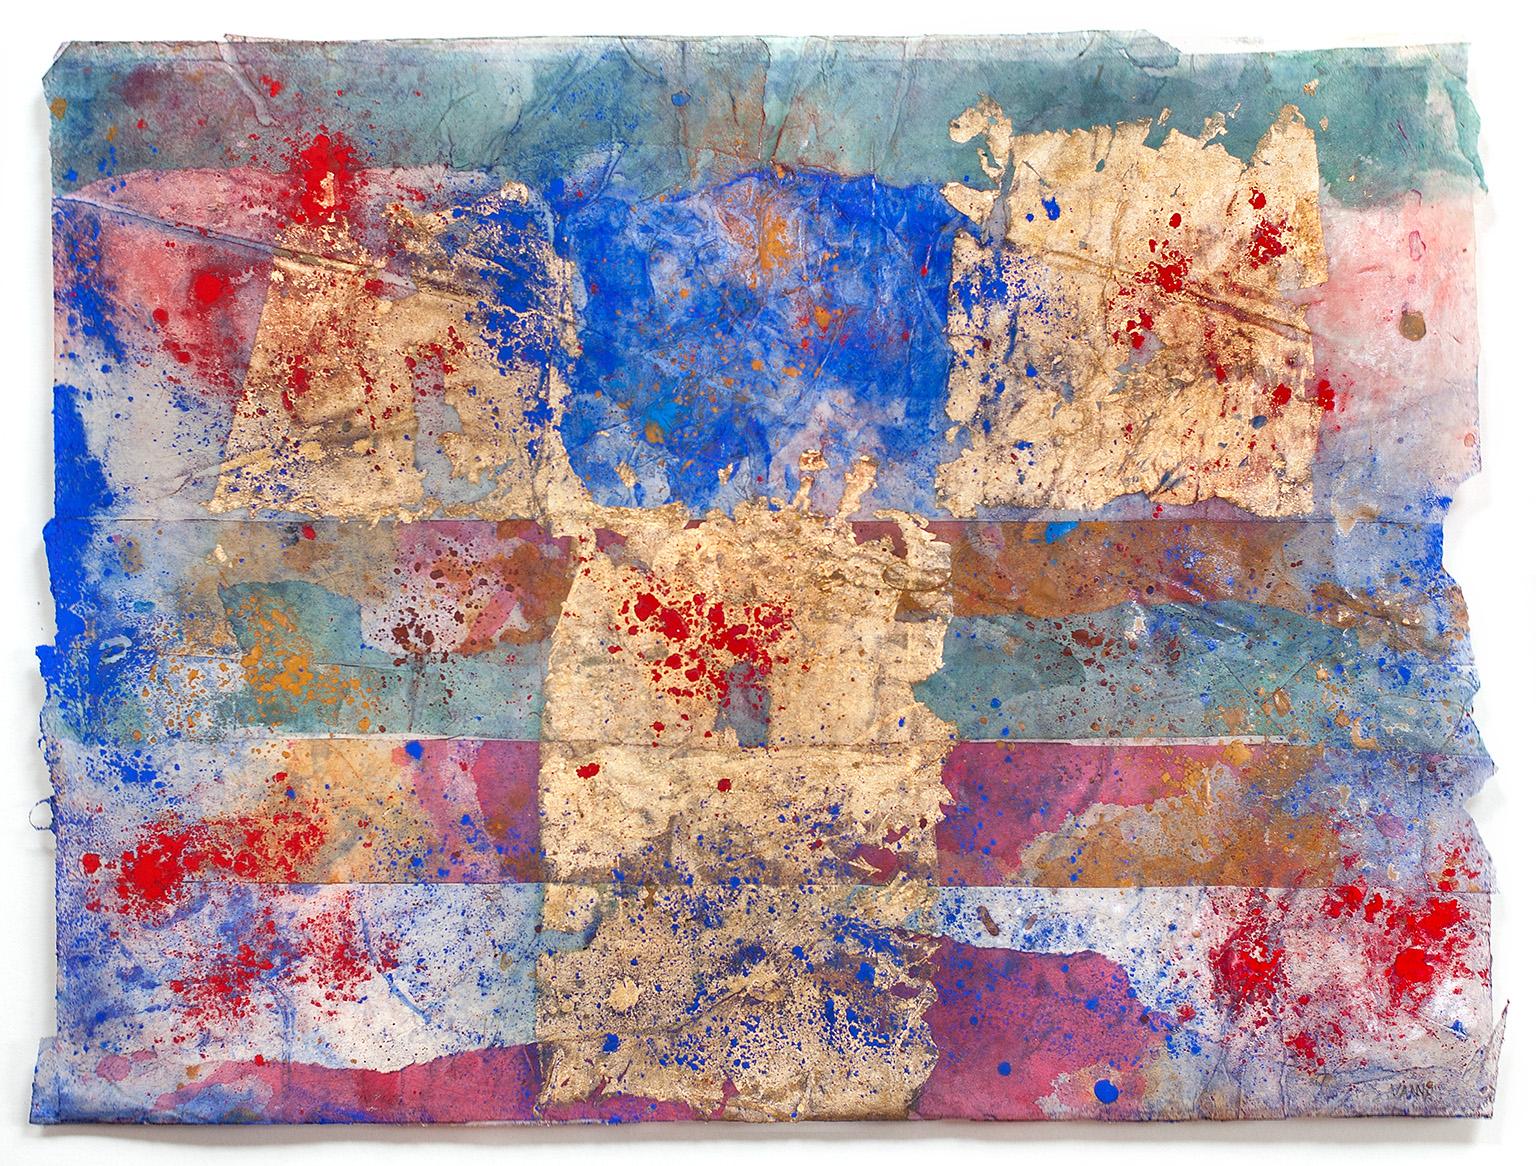 Abstract Drawing Gian Berto Vanni - Petite peinture abstraite sur papier de soie japonais « Erosions of the Square in Blue » (Erosions du carré en bleu)